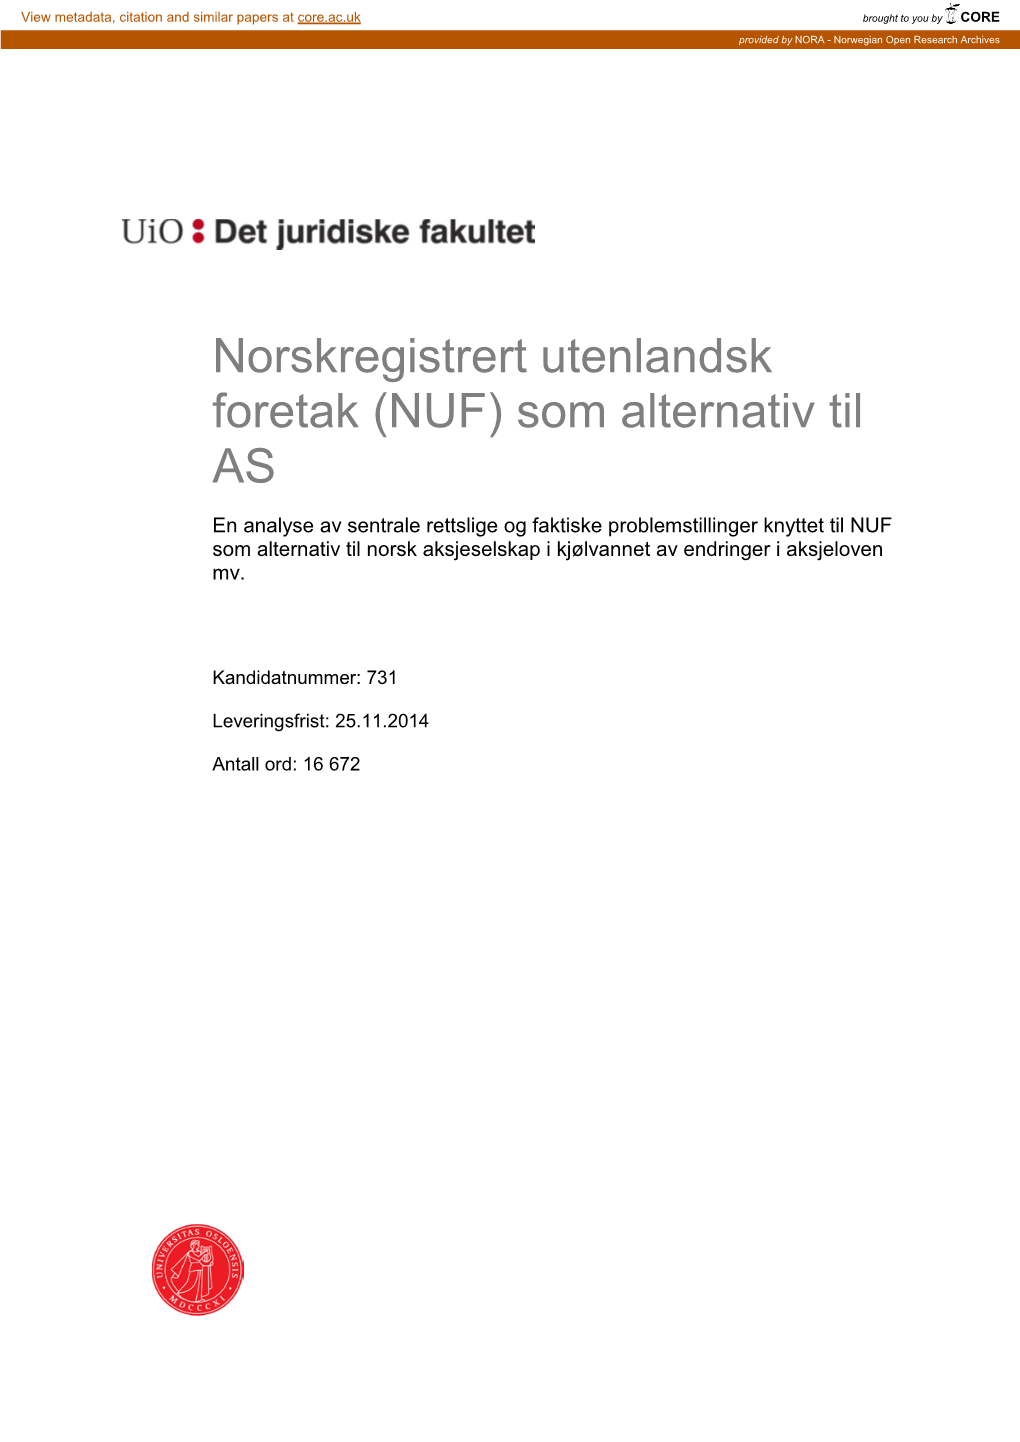 Norskregistrert Utenlandsk Foretak (NUF)